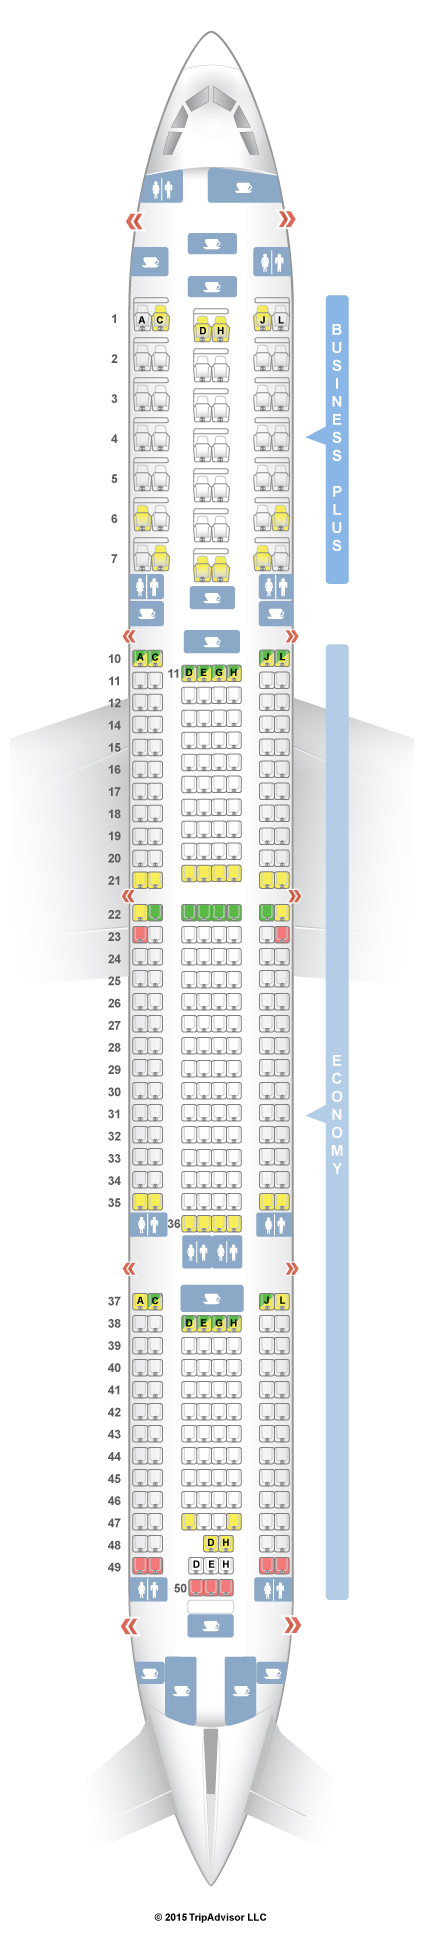 A340 300 Sas Seating Chart